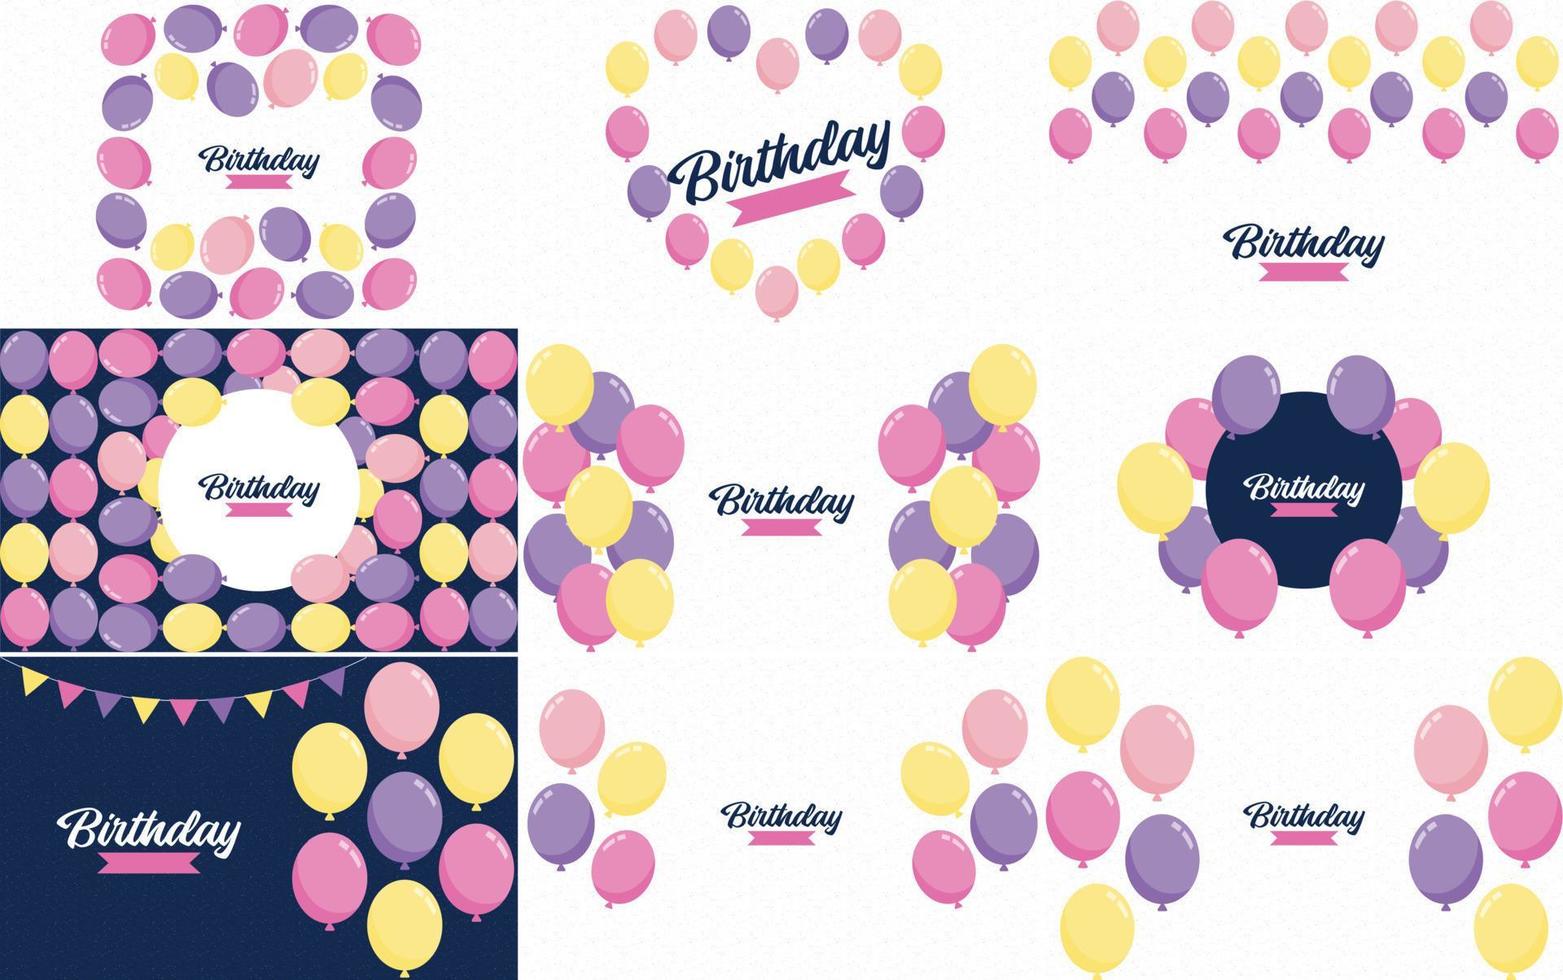 texto de feliz cumpleaños con un dibujo a mano. estilo de dibujos animados e ilustraciones de globos de colores vector